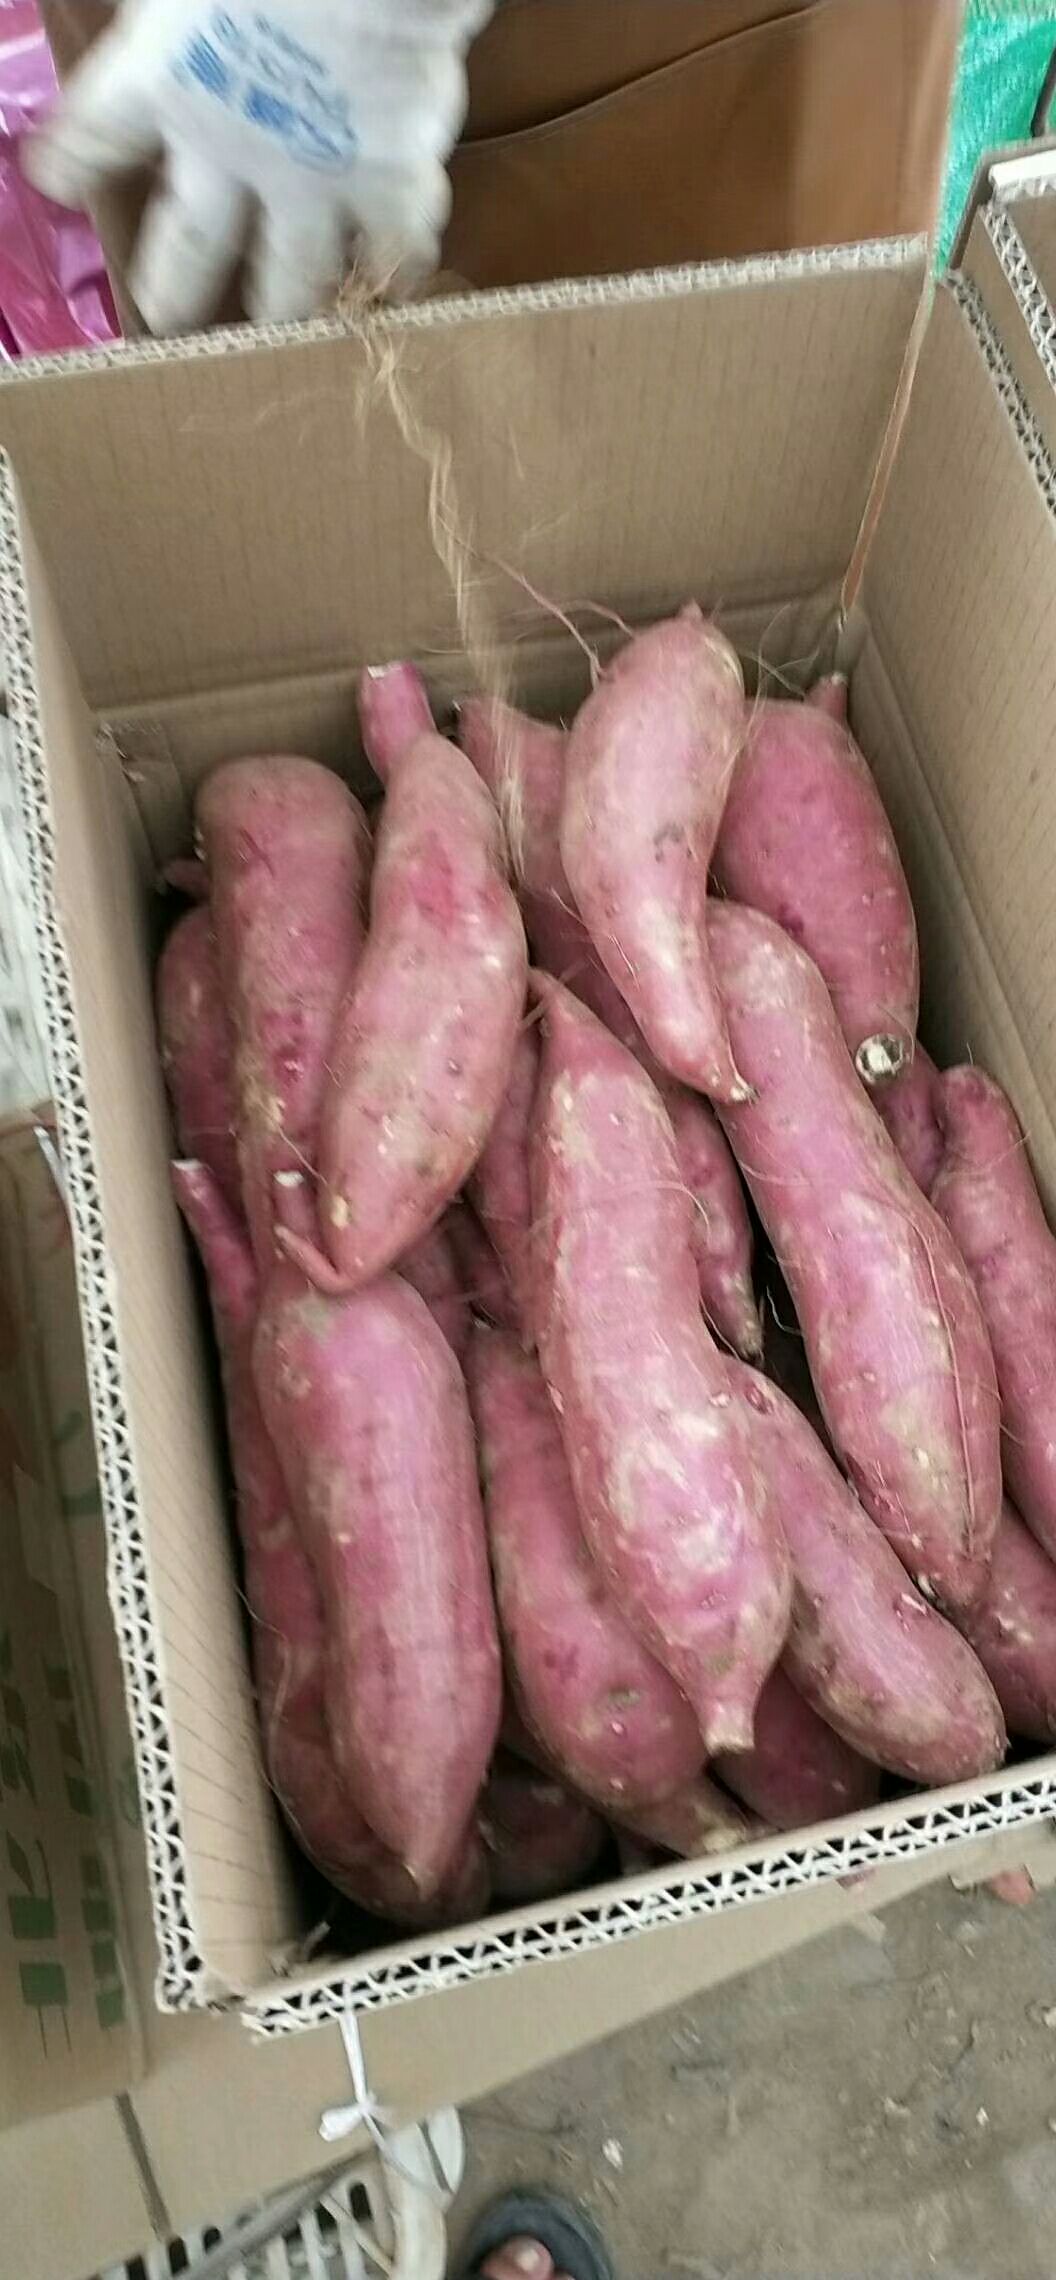 [沙地红薯批发]沙地红薯 济薯26价格1元/斤 - 惠农网